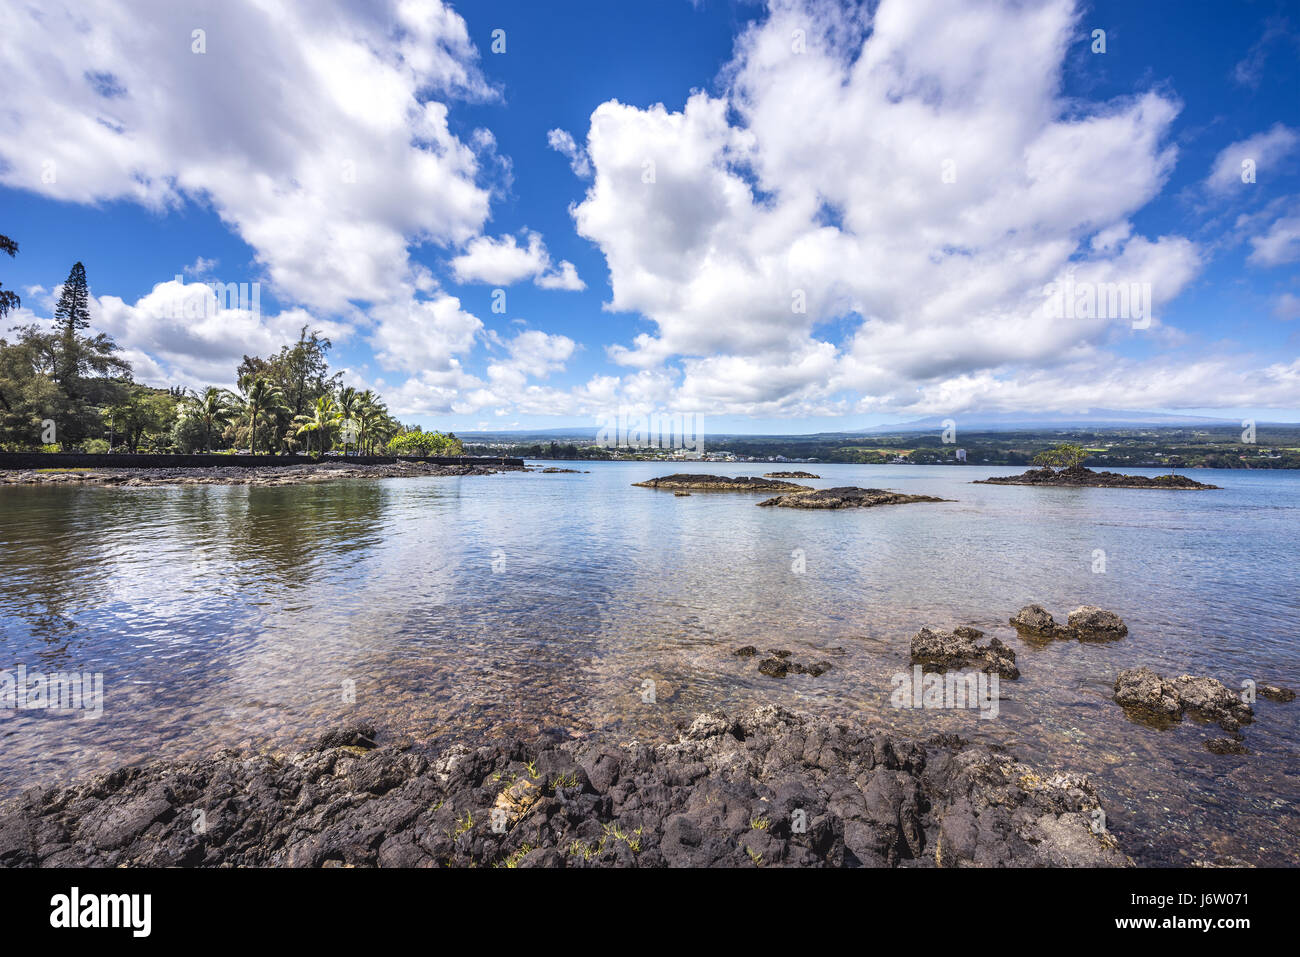 Une communauté dynamique, scenic Hawaiian cove avec des vagues lave-shore met en lumière le climat tropical et l'apparence de paradis. Banque D'Images